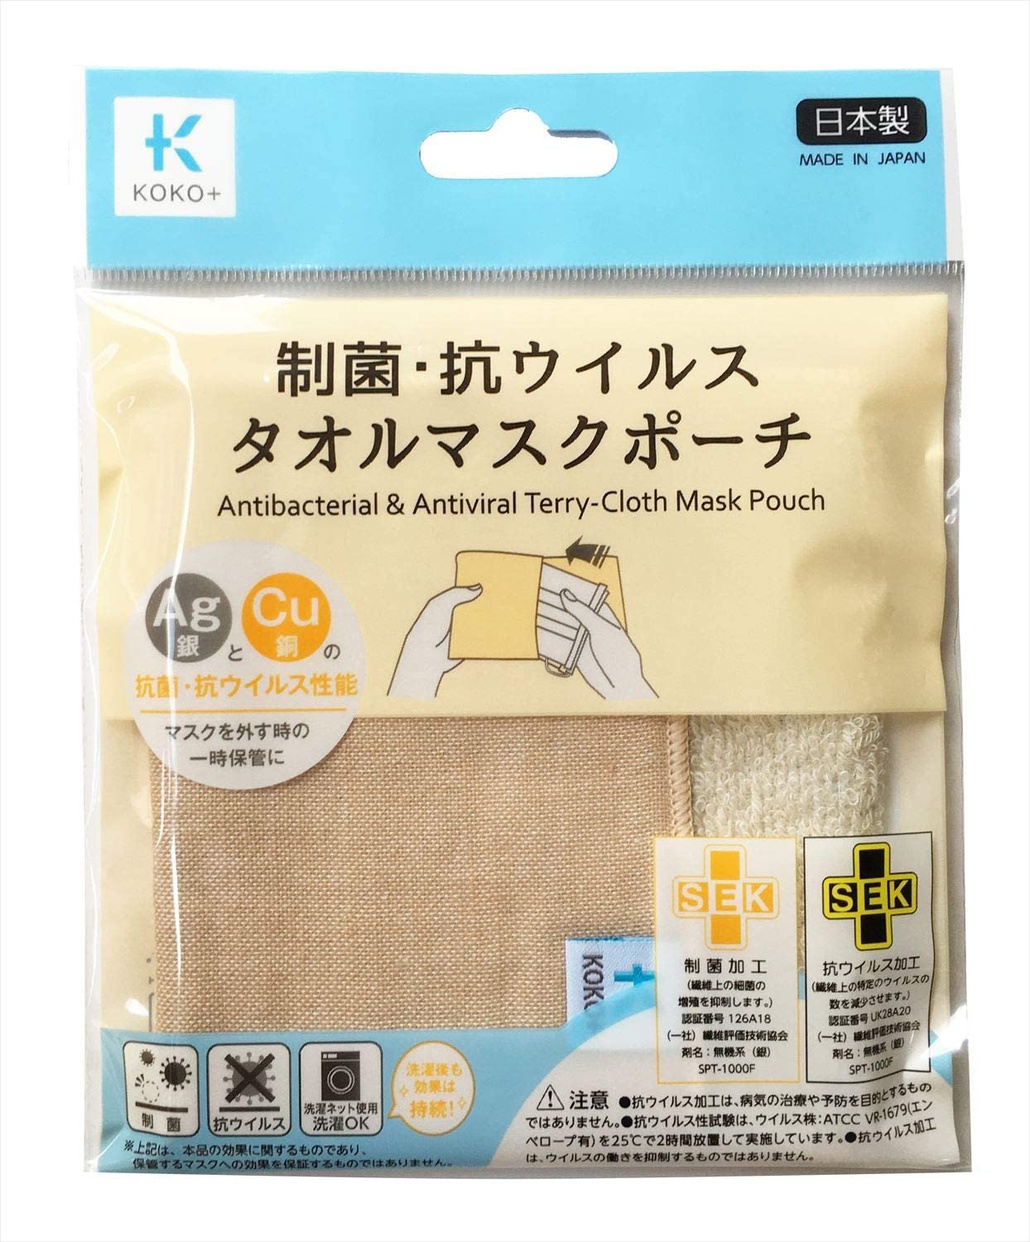 マスクケース・カバー・ホルダーおすすめ商品：KOKO+(ココタス) タオル マスク ポーチ